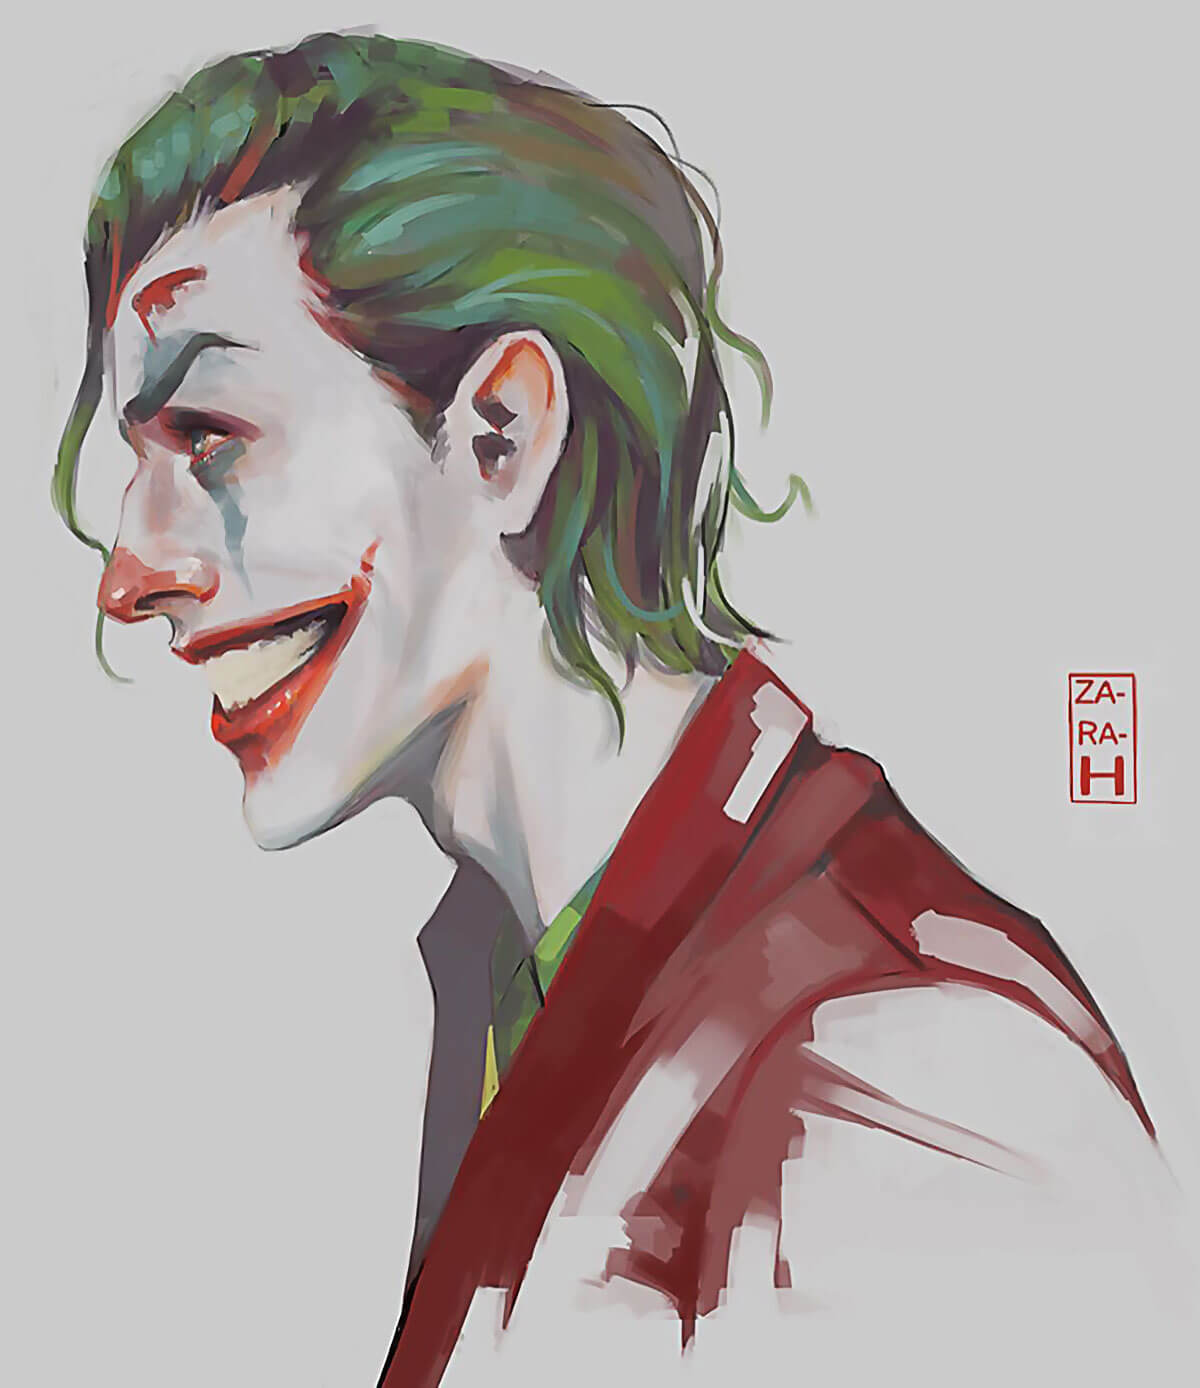 Joaquin Phoenix’s Joker look